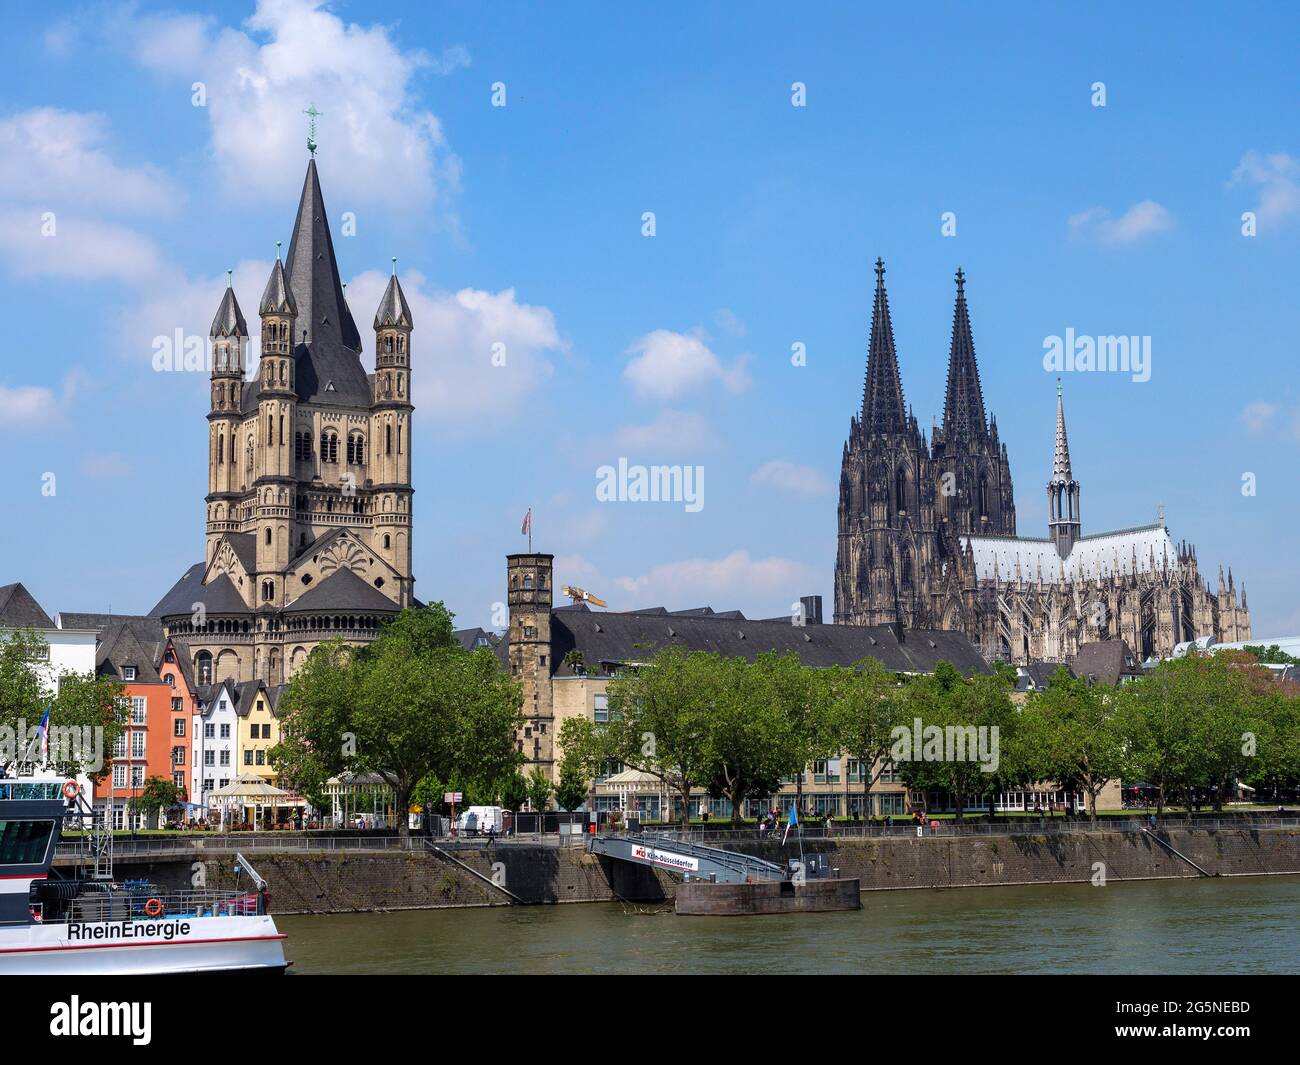 iglesia Groß de San Martín y catedral, Colonia, Renania del Norte-Westfalia, Alemania, Europa Foto de stock